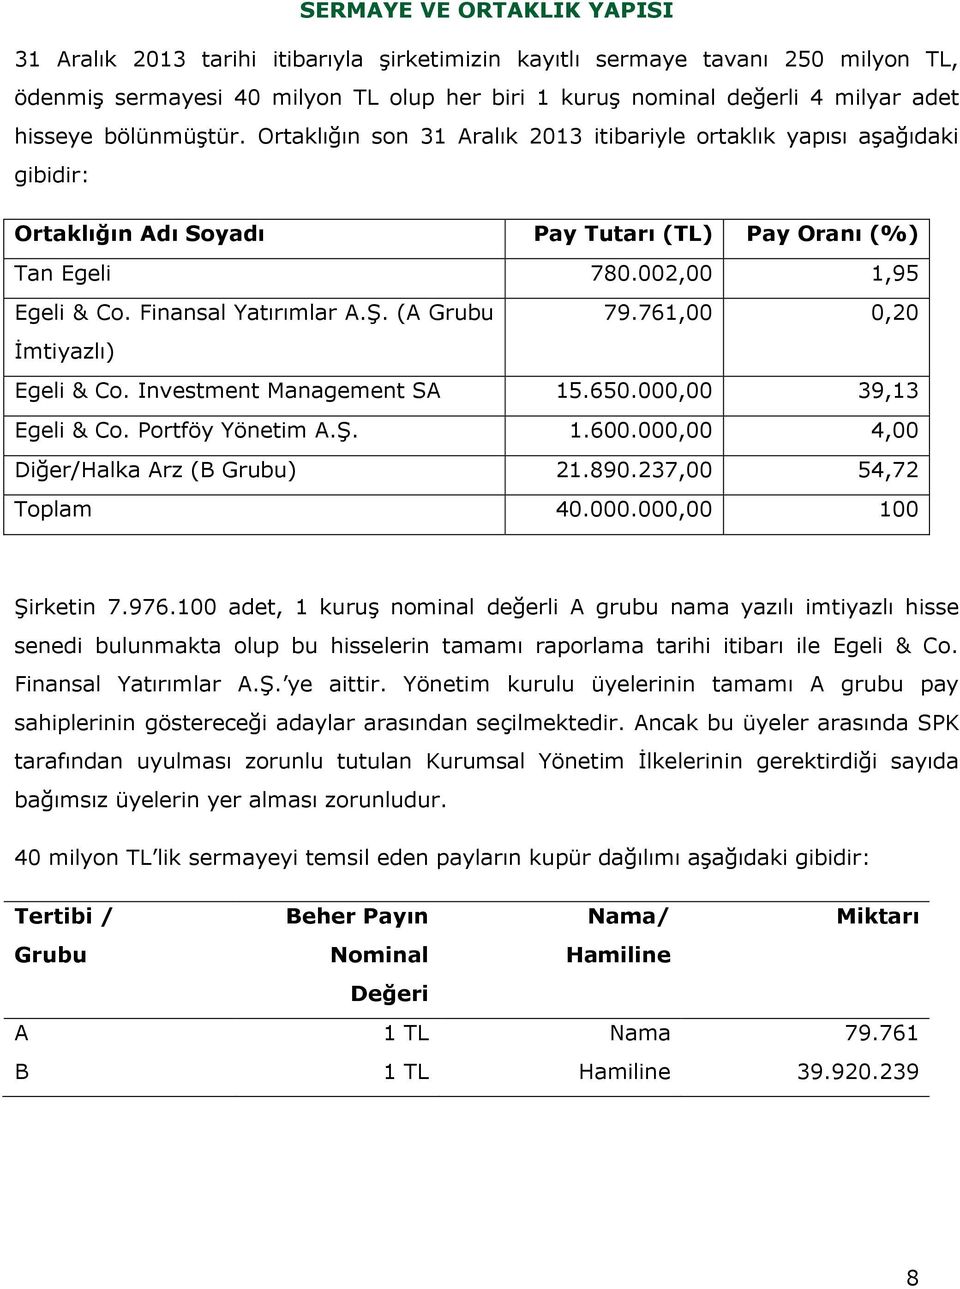 Finansal Yatırımlar A.Ş. (A Grubu 79.761,00 0,20 İmtiyazlı) Egeli & Co. Investment Management SA 15.650.000,00 39,13 Egeli & Co. Portföy Yönetim A.Ş. 1.600.000,00 4,00 Diğer/Halka Arz (B Grubu) 21.